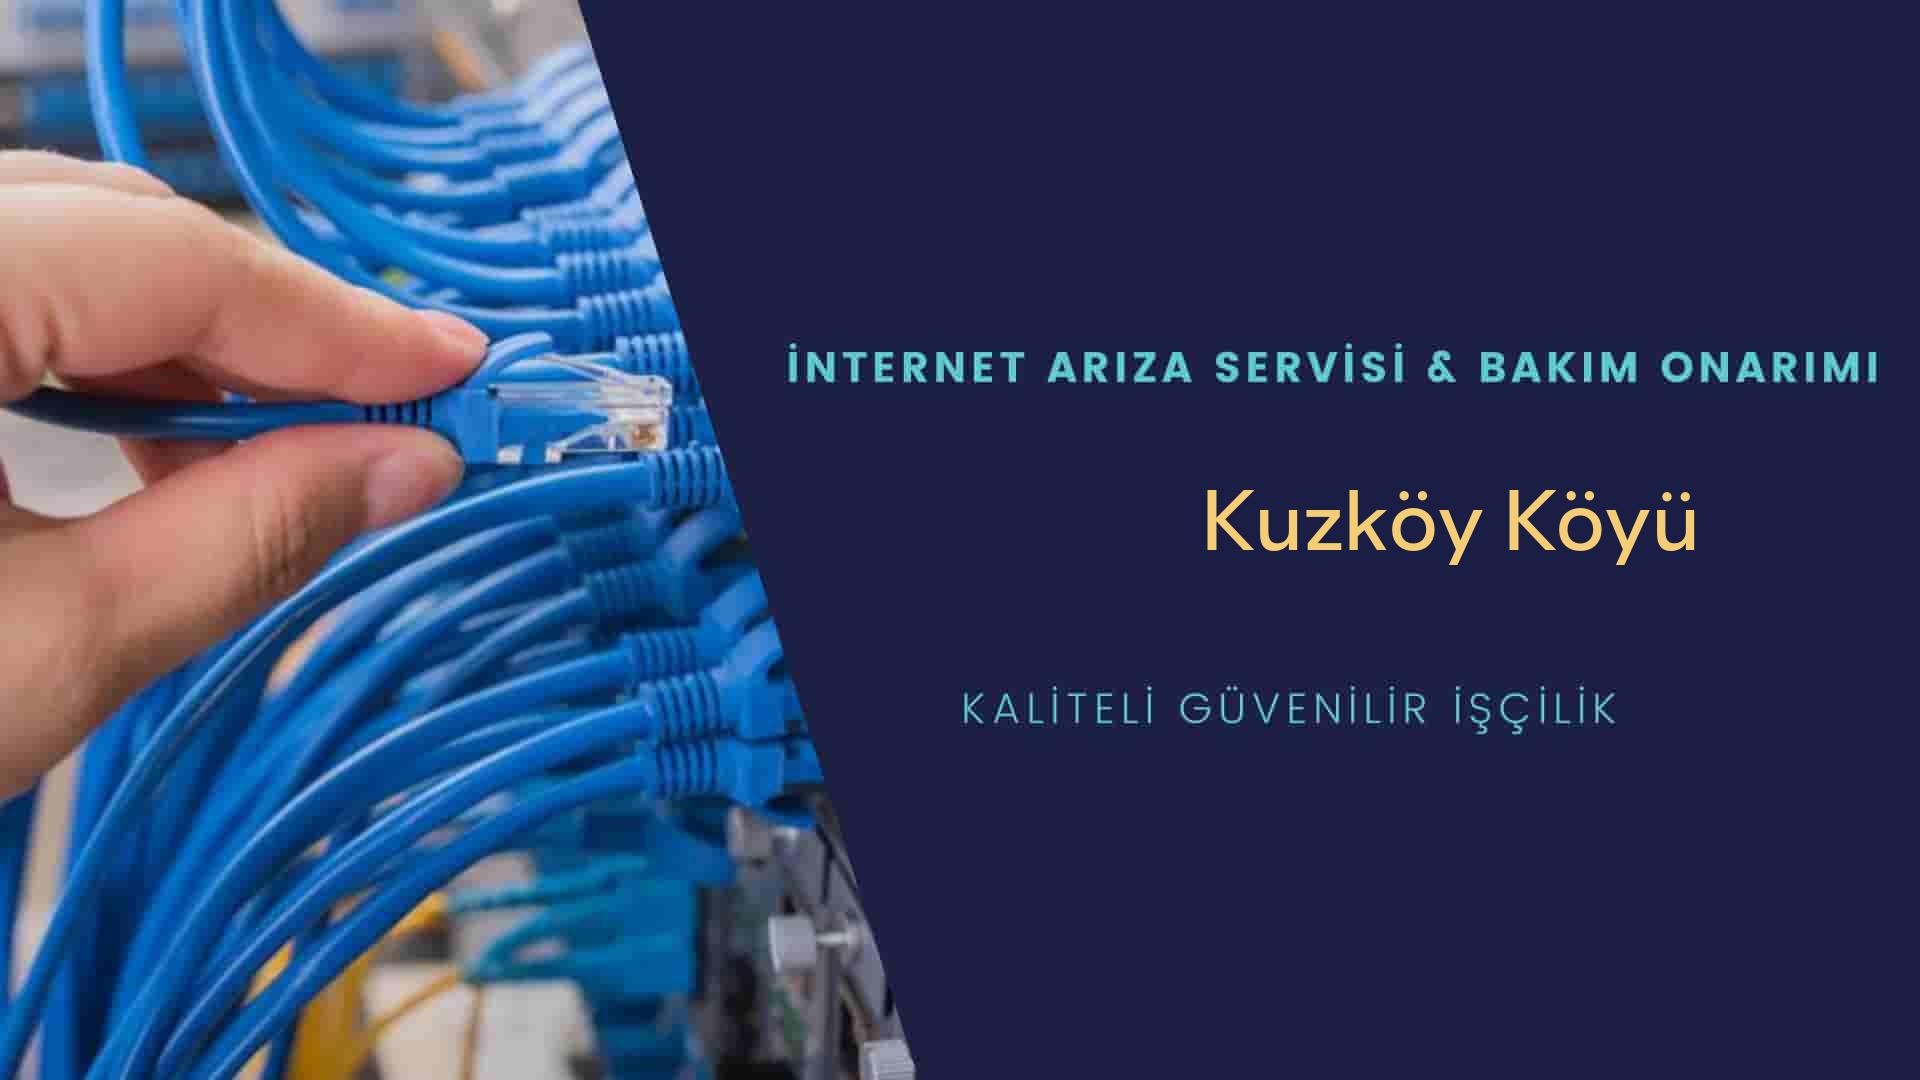 Kuzköy Köyü internet kablosu çekimi yapan yerler veya elektrikçiler mi? arıyorsunuz doğru yerdesiniz o zaman sizlere 7/24 yardımcı olacak profesyonel ustalarımız bir telefon kadar yakındır size.